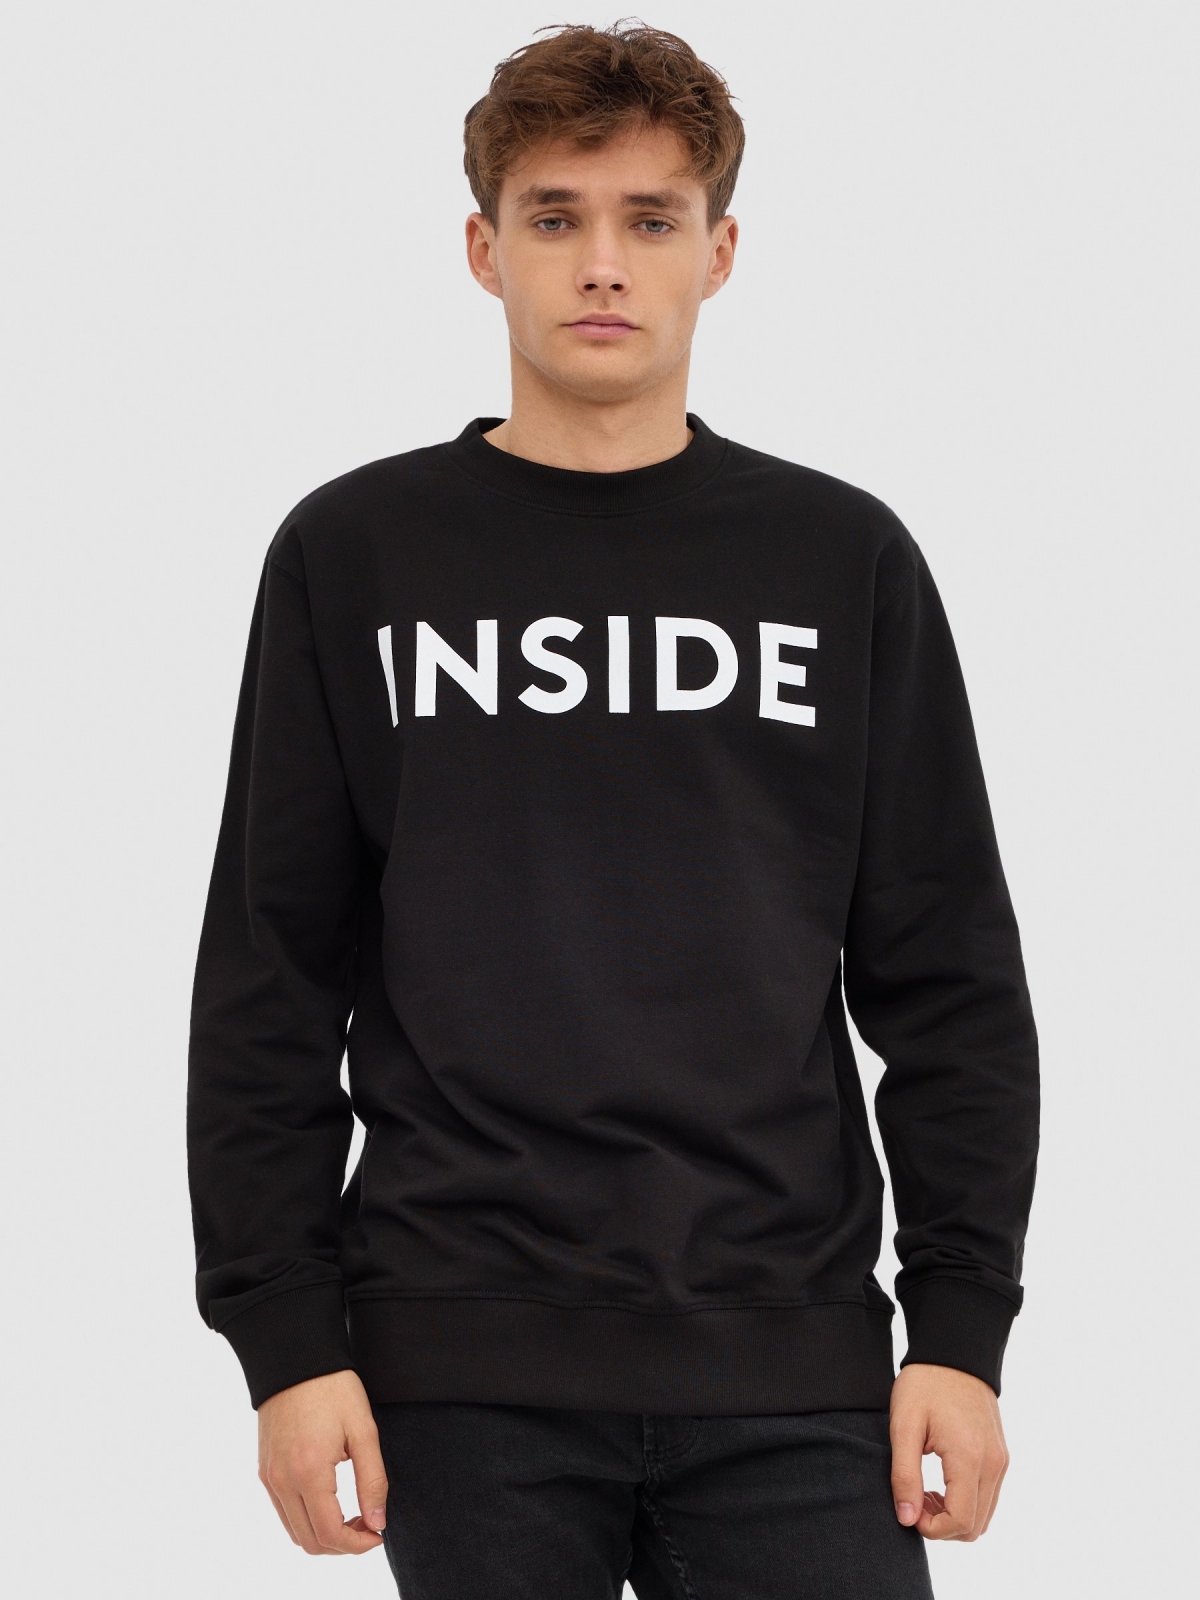 INSIDE hoodless sweatshirt